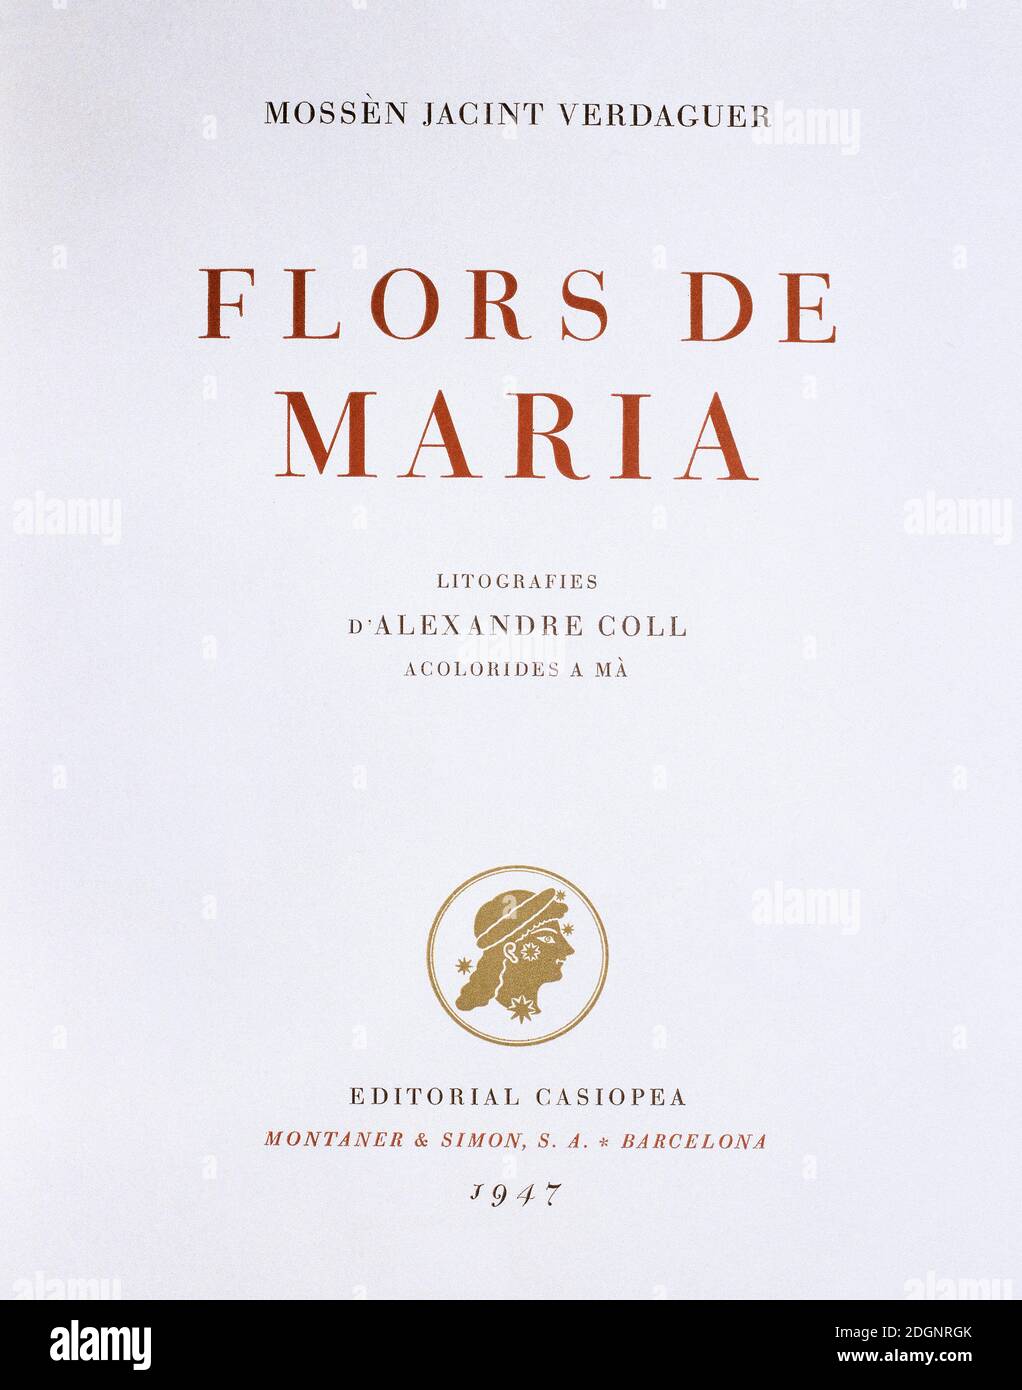 Flors de Maria, 1902, von Jacint Verdaguer Santalo (1845-1902). Titelbild der ersten Ausgabe 1947. Editorial Casiopea. Spanien, Katalonien. Stockfoto